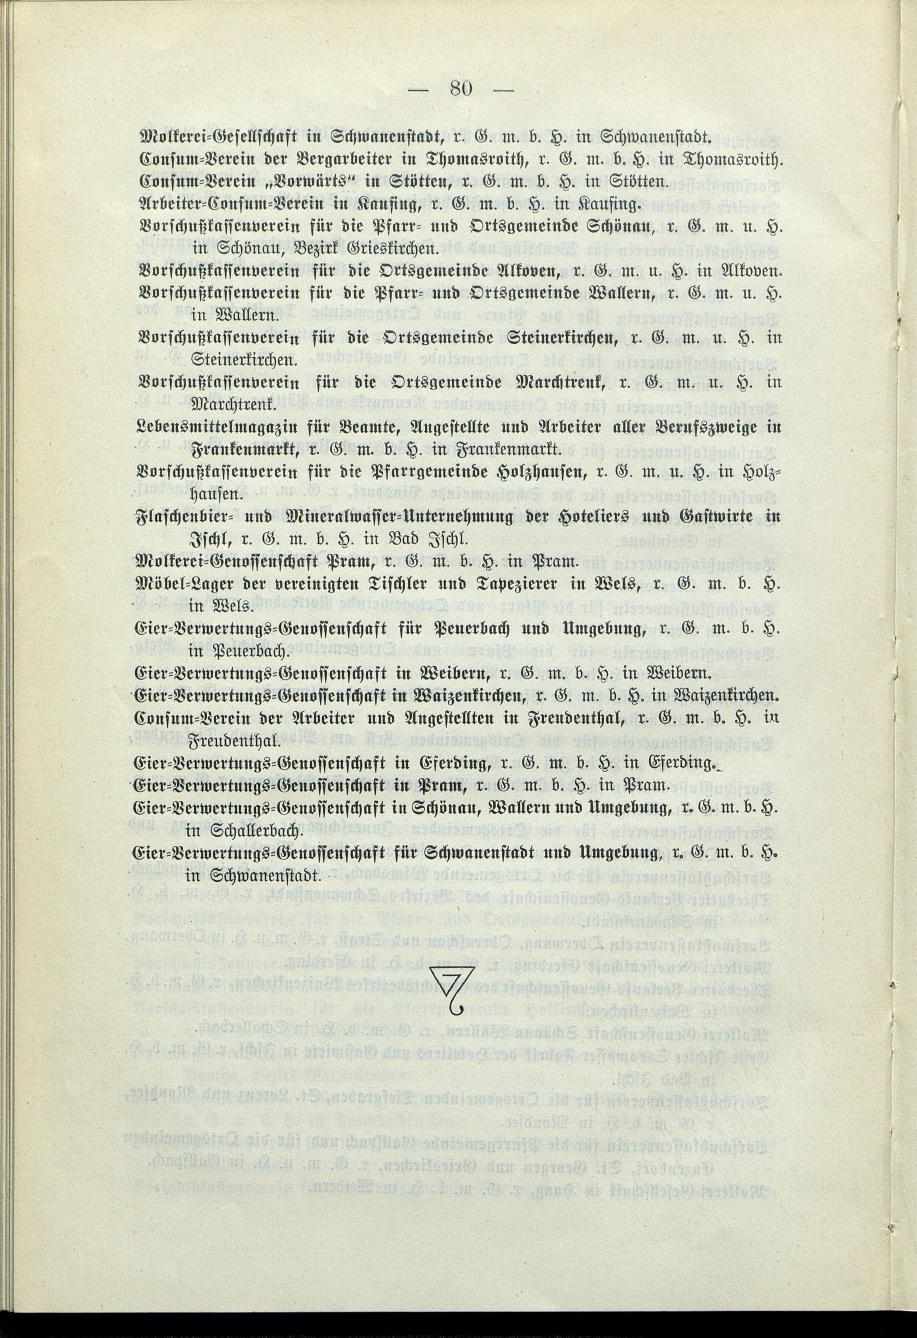 Verzeichnis der protokollierten Firmen und Genossenschaften in Oberösterreich 1908 - Page 84